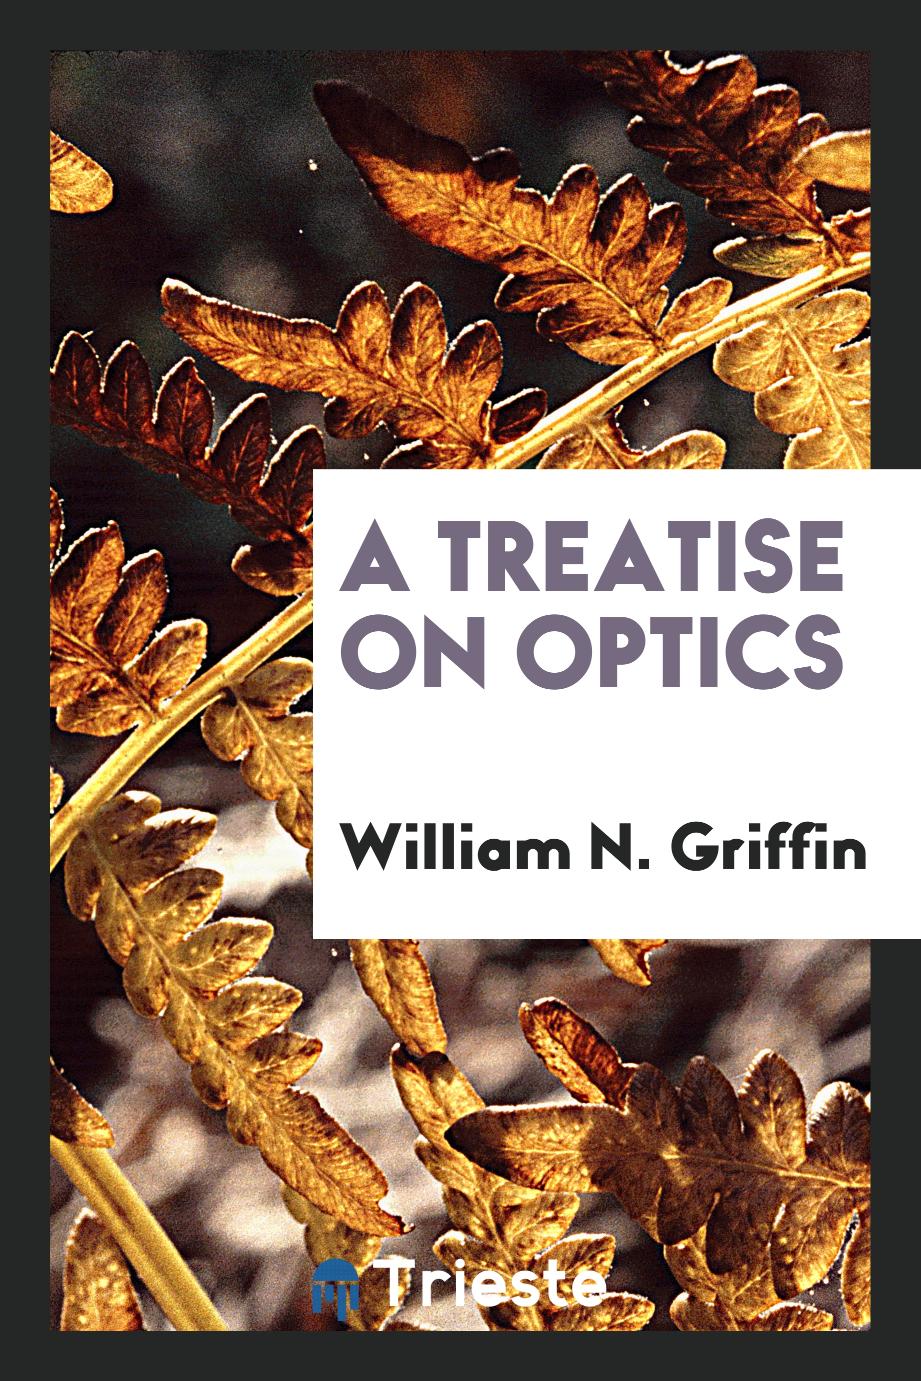 A Treatise on optics